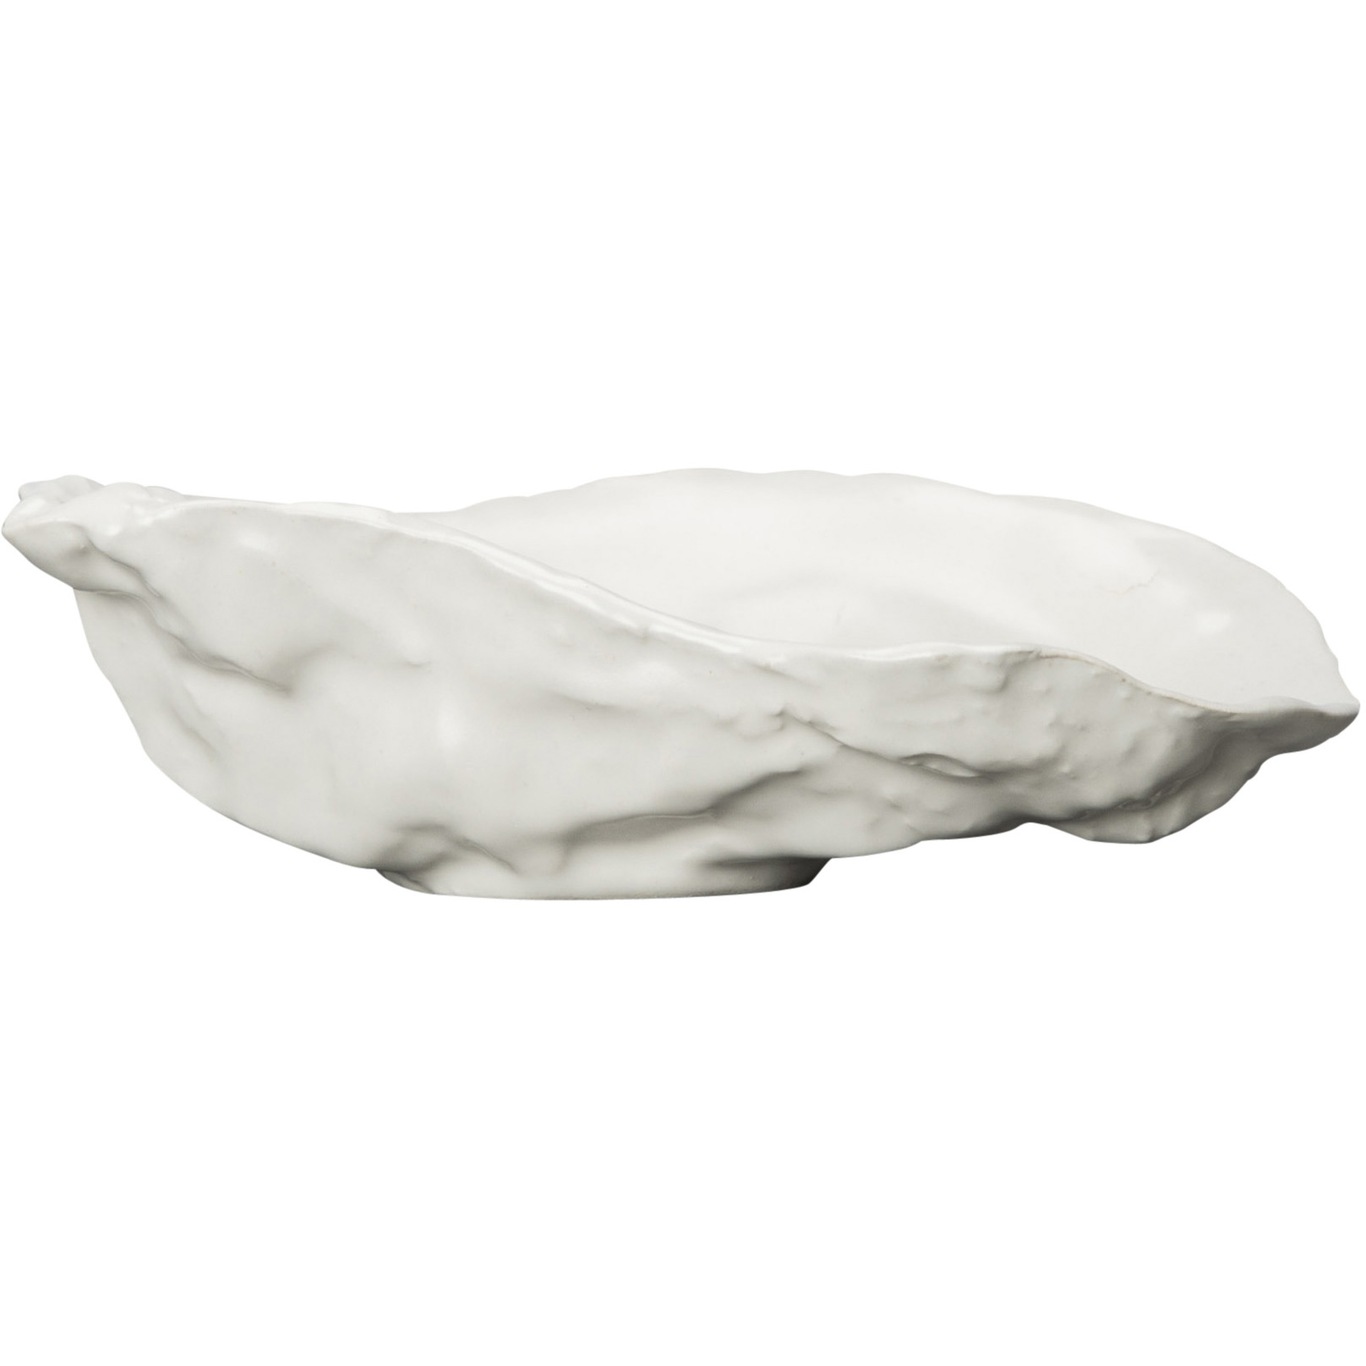 Oyster Schüssel 8x13 cm, Weiß